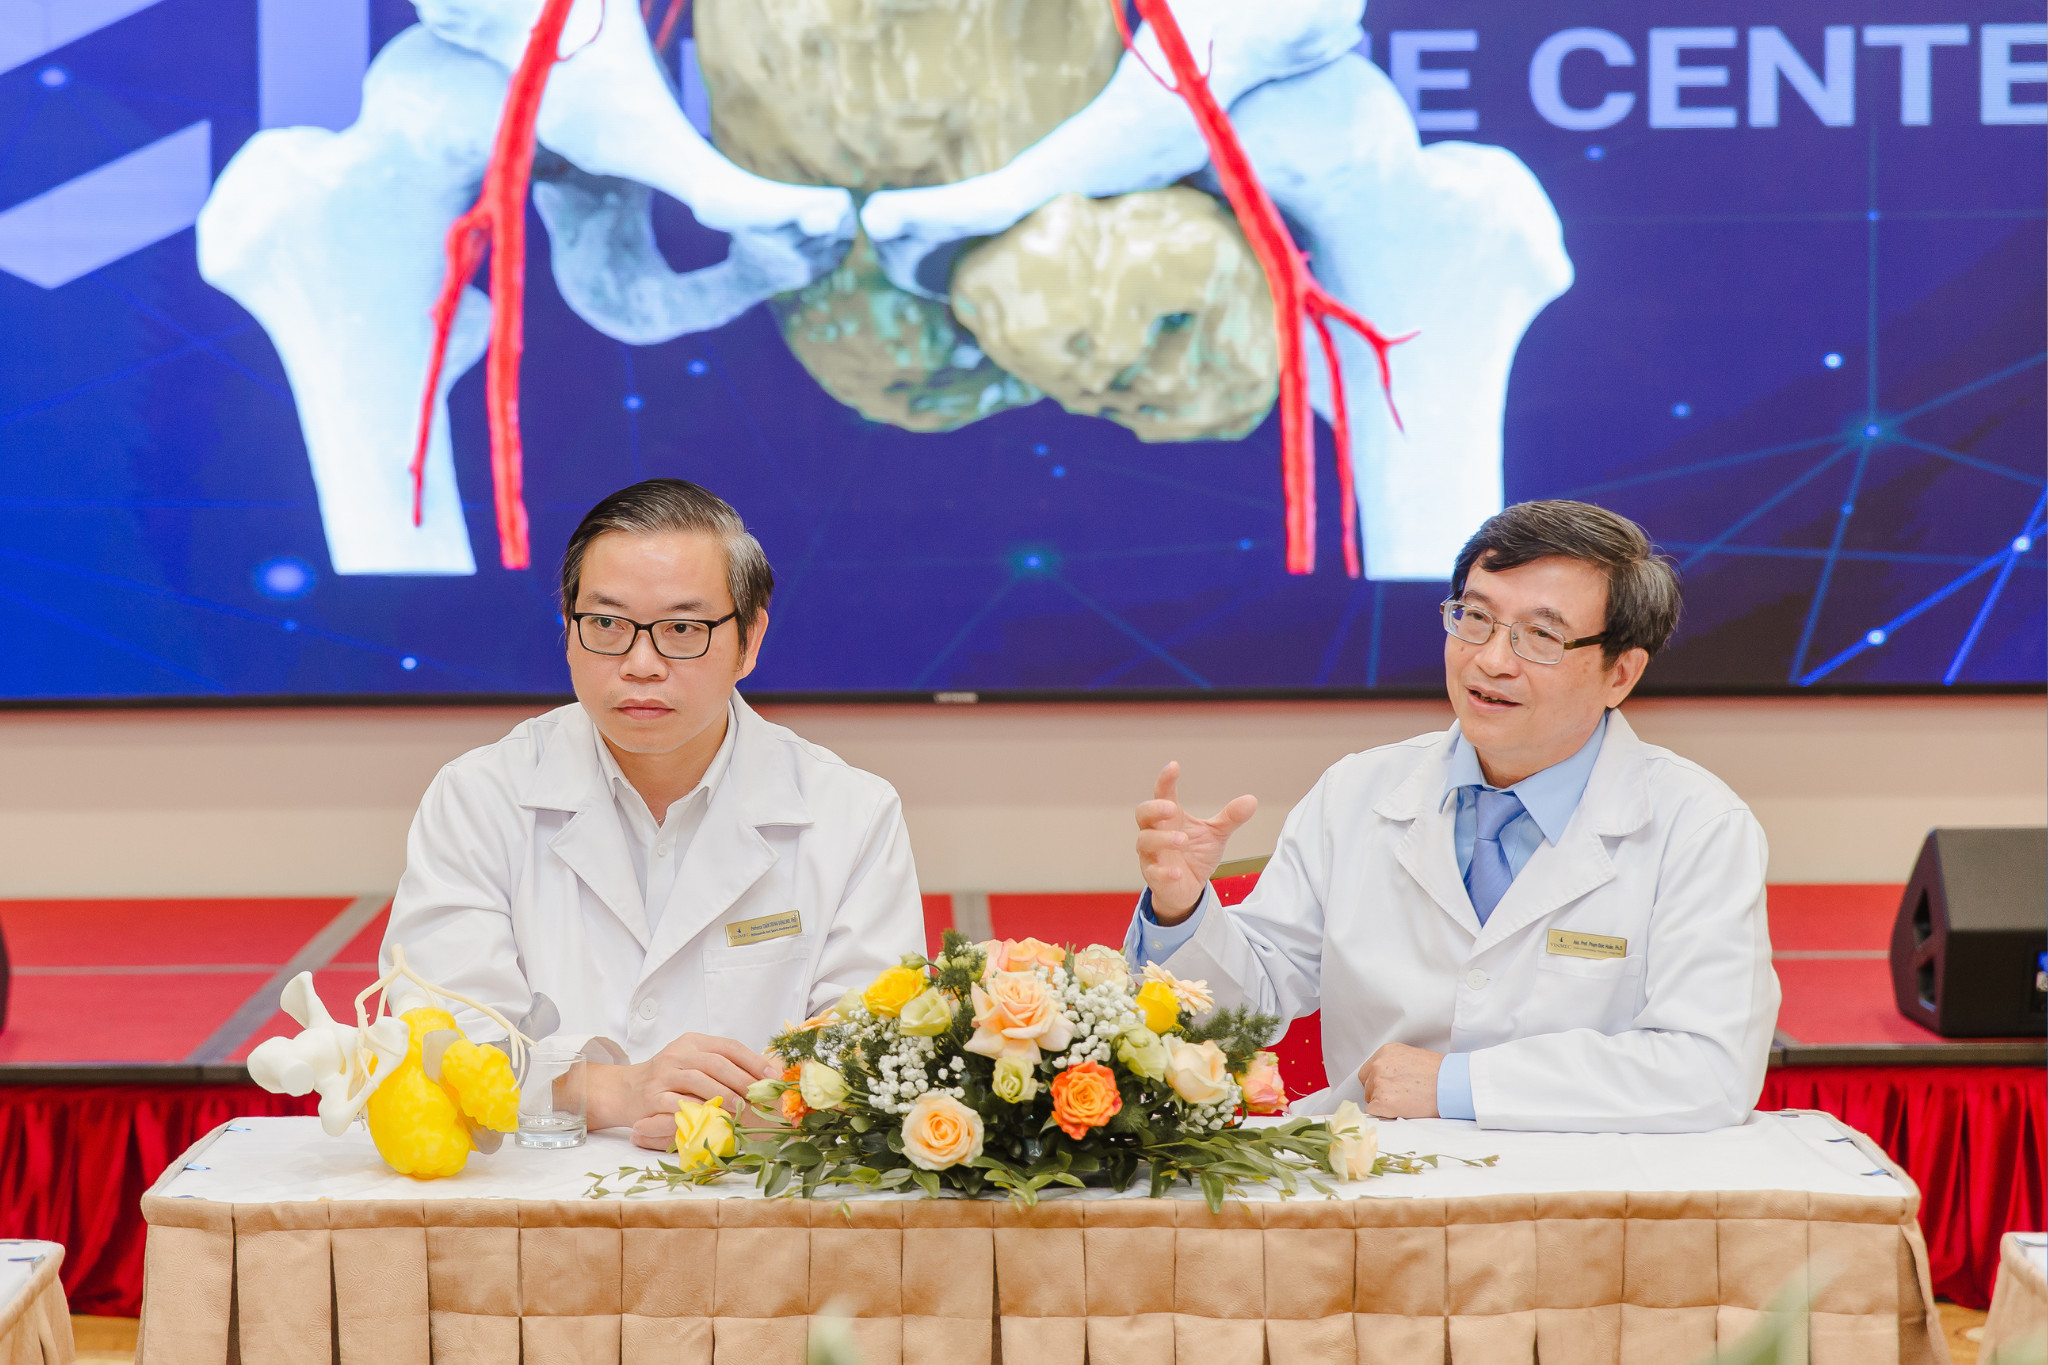 Công nghệ in 3D trong y tế mang lại những giá trị và tác động kỳ diệu cho người bệnh, giúp các bác sĩ sử dụng dụng cụ mổ vừa khít với giải phẫu của người Việt, giá thành thấp.